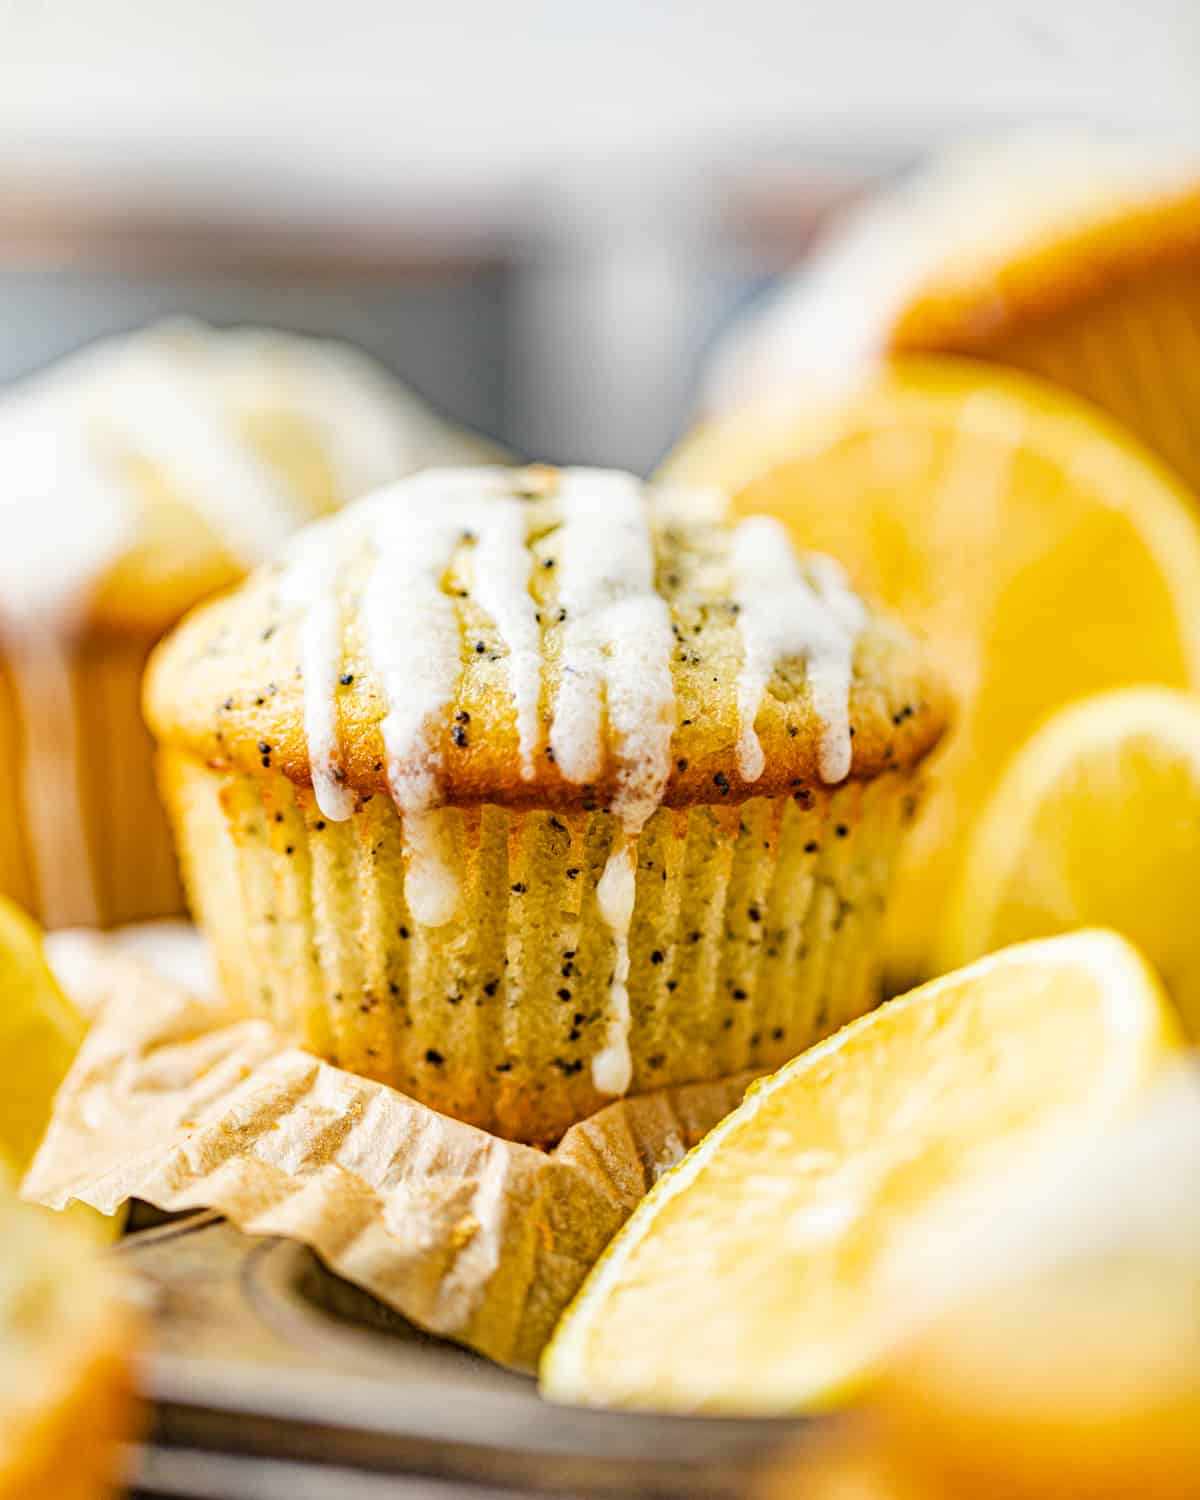 lemon poppy seed muffins next to sliced lemons.